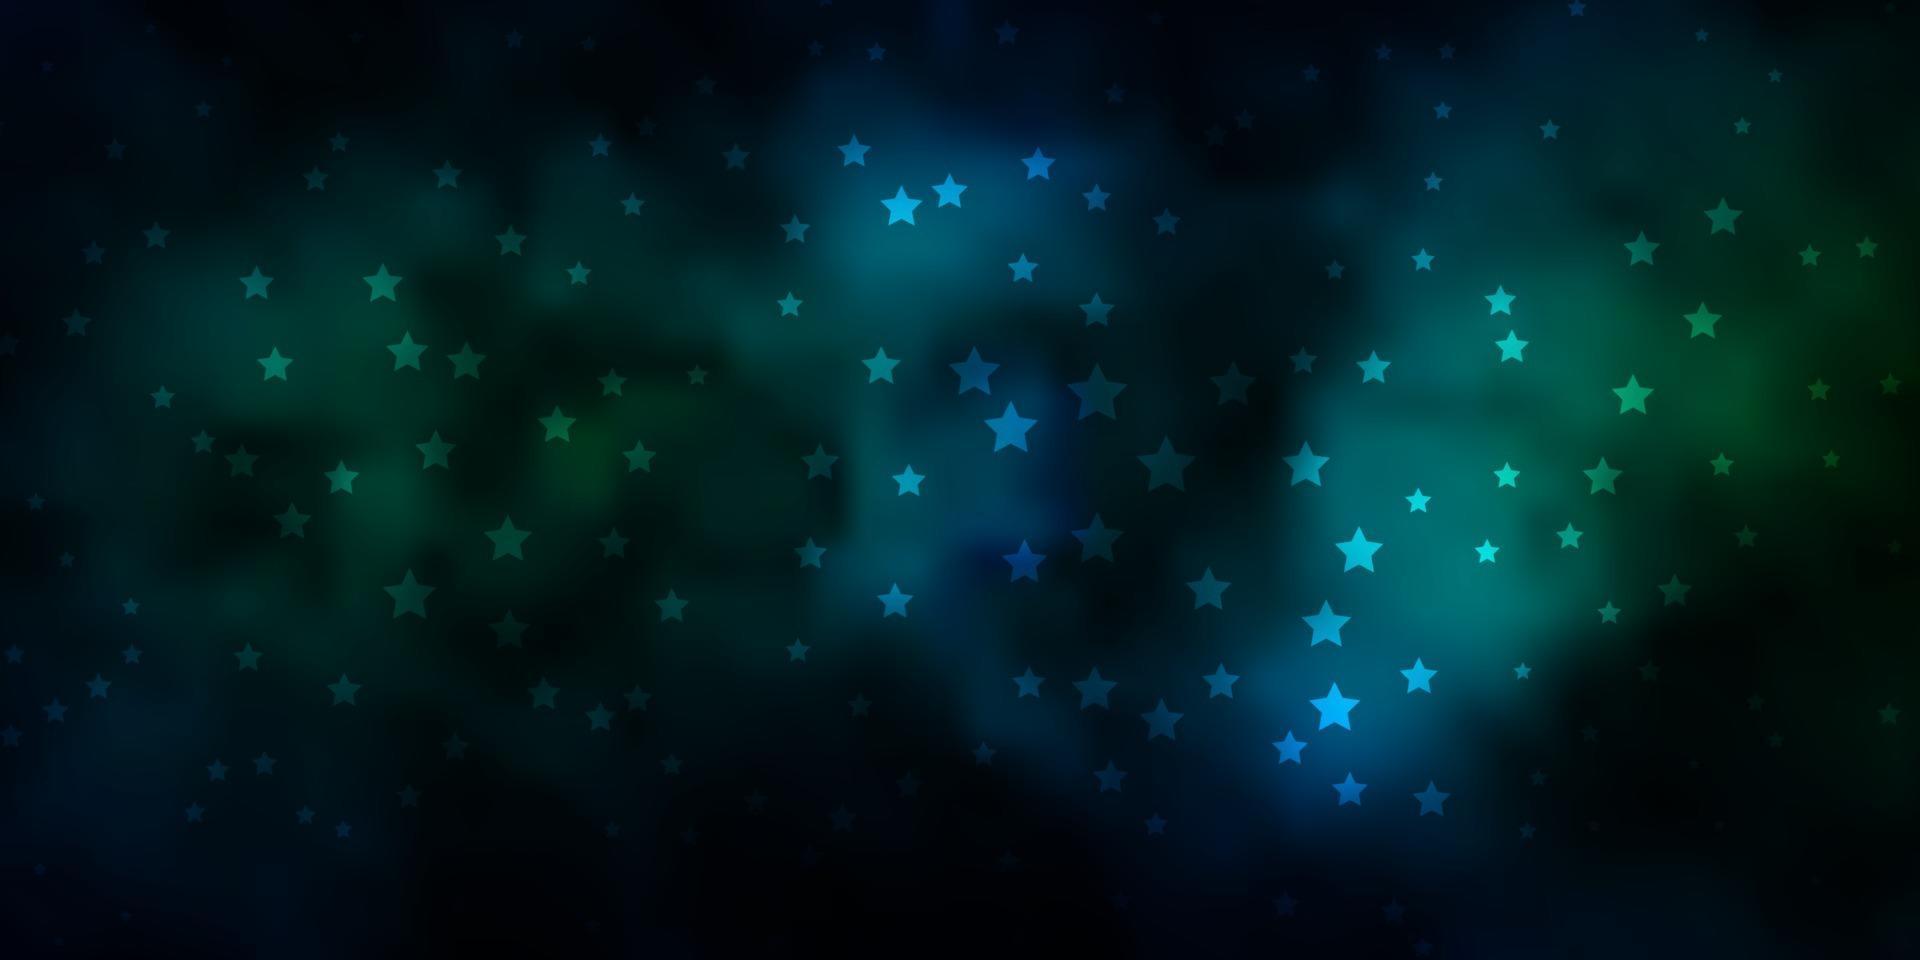 dunkelblaue, grüne Vektorbeschaffenheit mit schönen Sternen. vektor